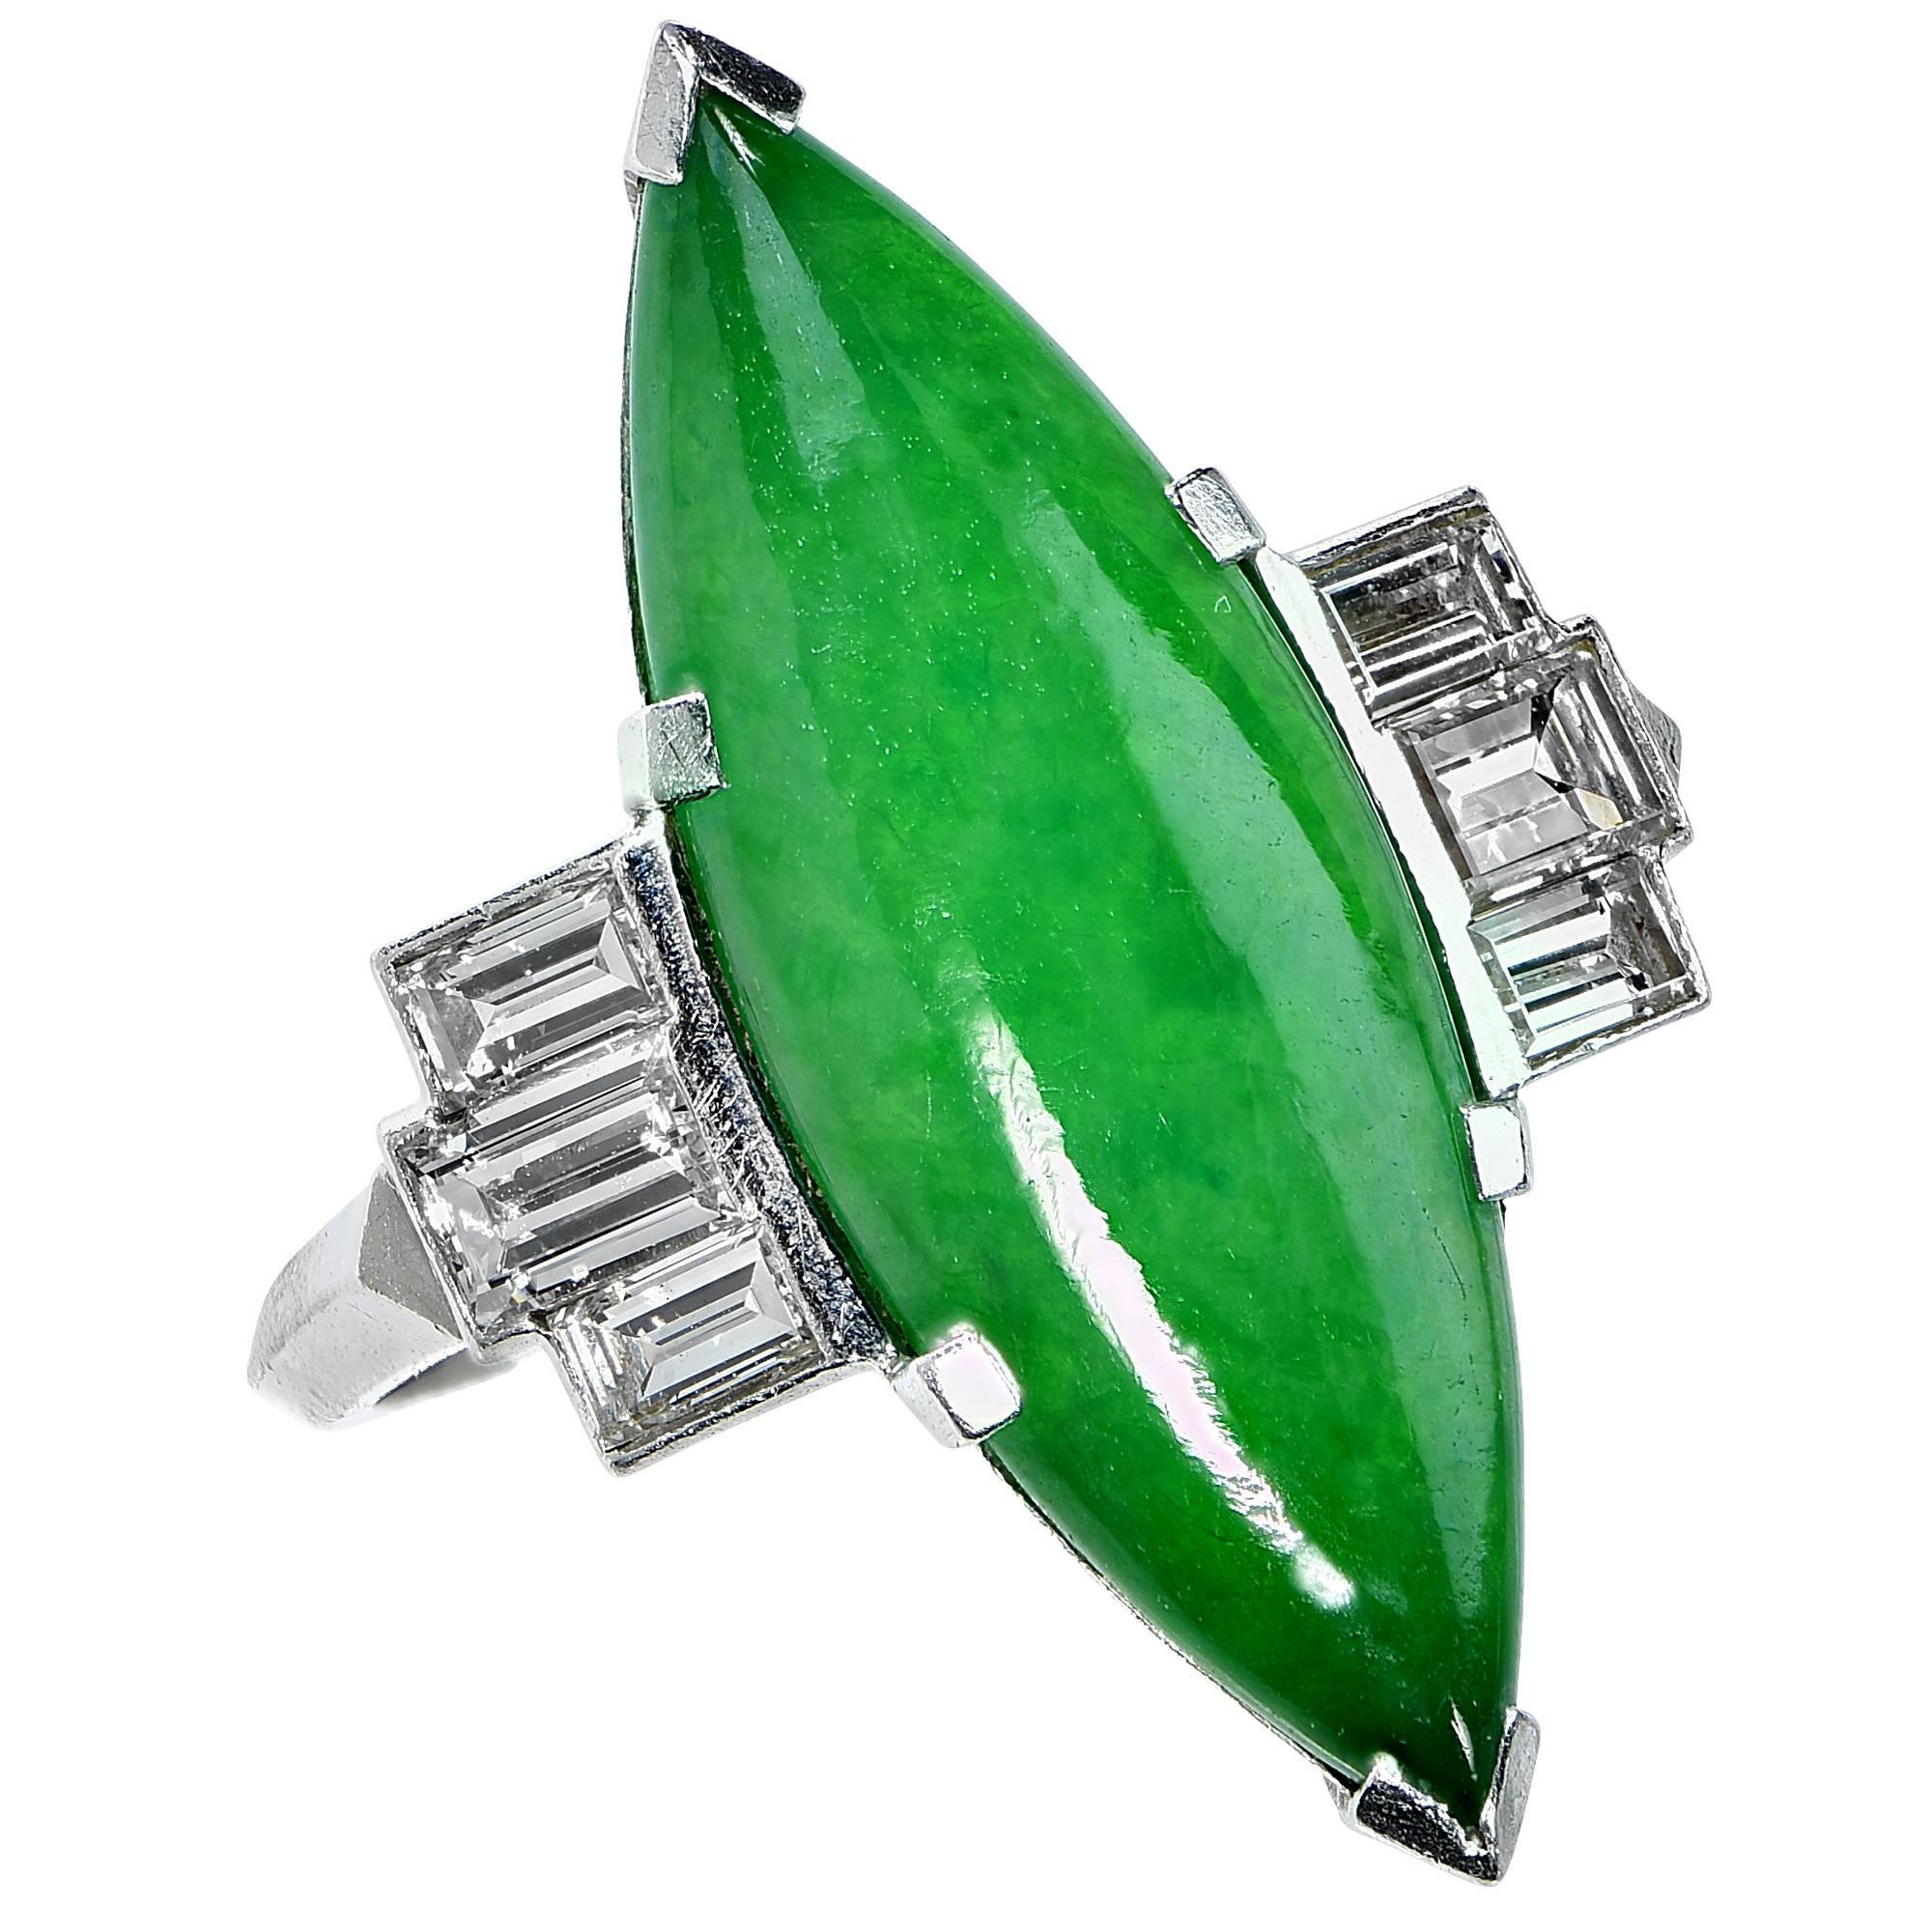 Circa 1950s GIA Graded Natural Jadeite Jade Diamond Platinum Ring